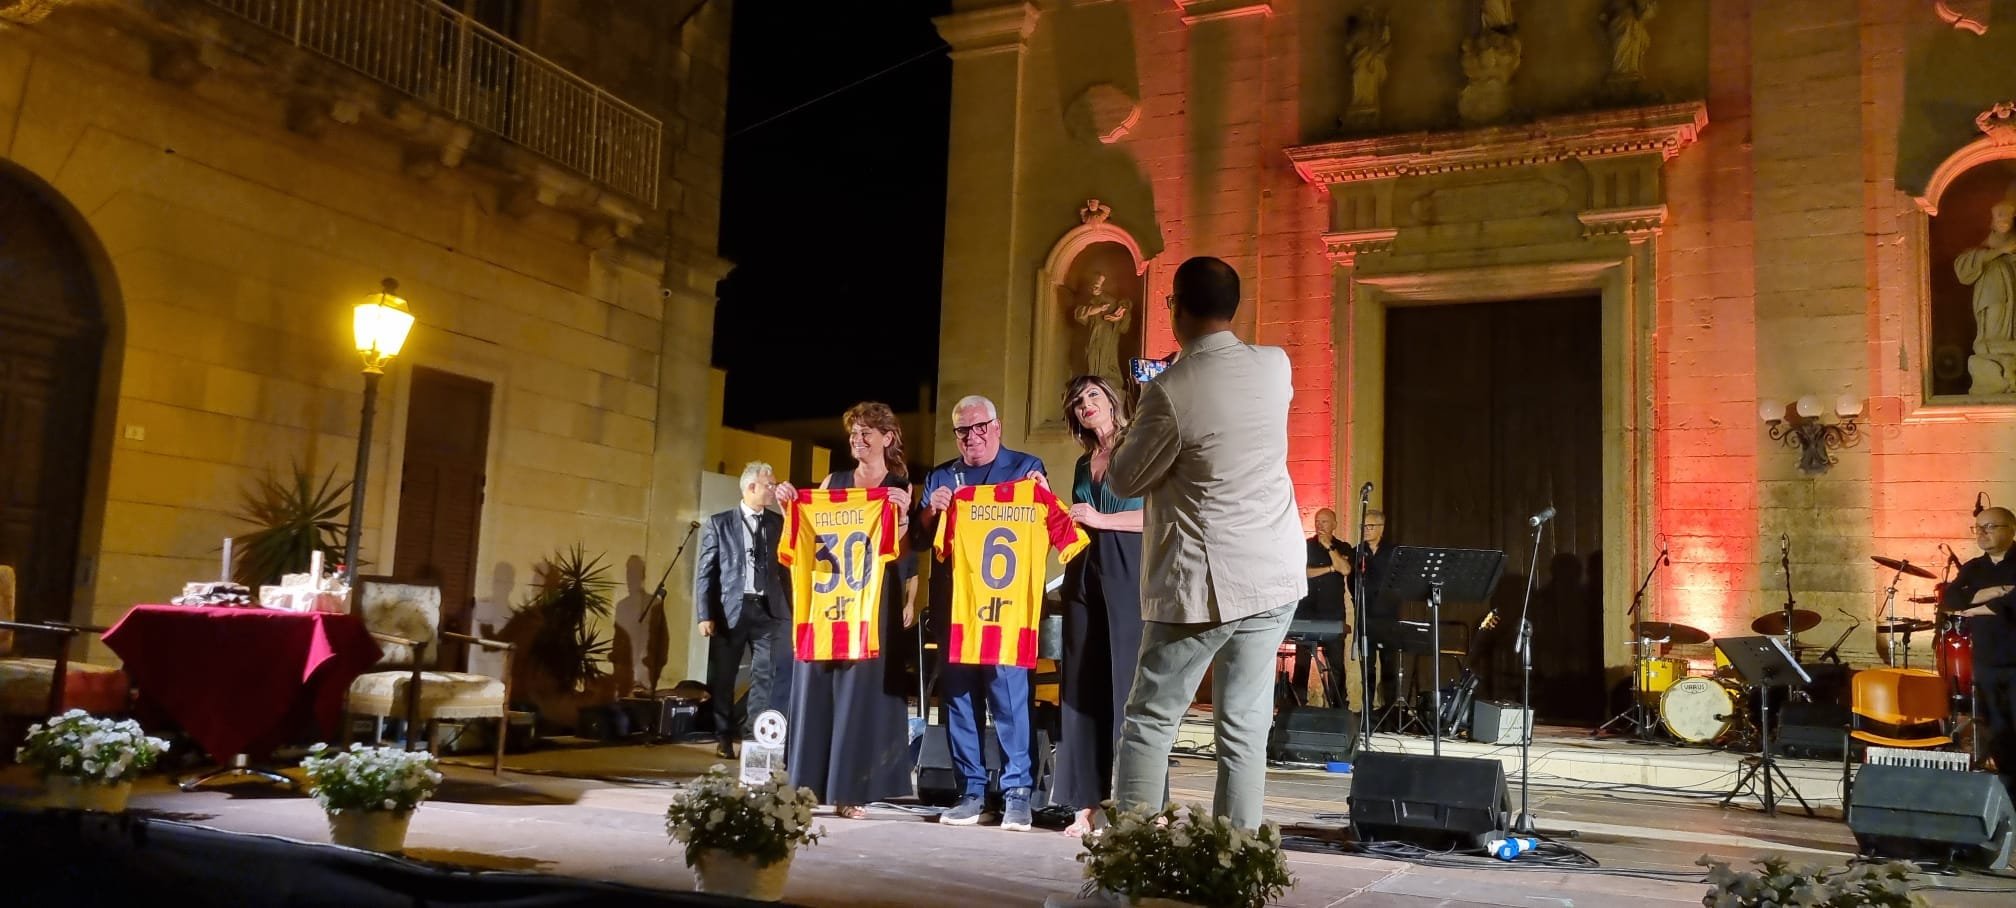 Consegna maglie ufficiali Us Lecce all'aministrazione di Giurdignano